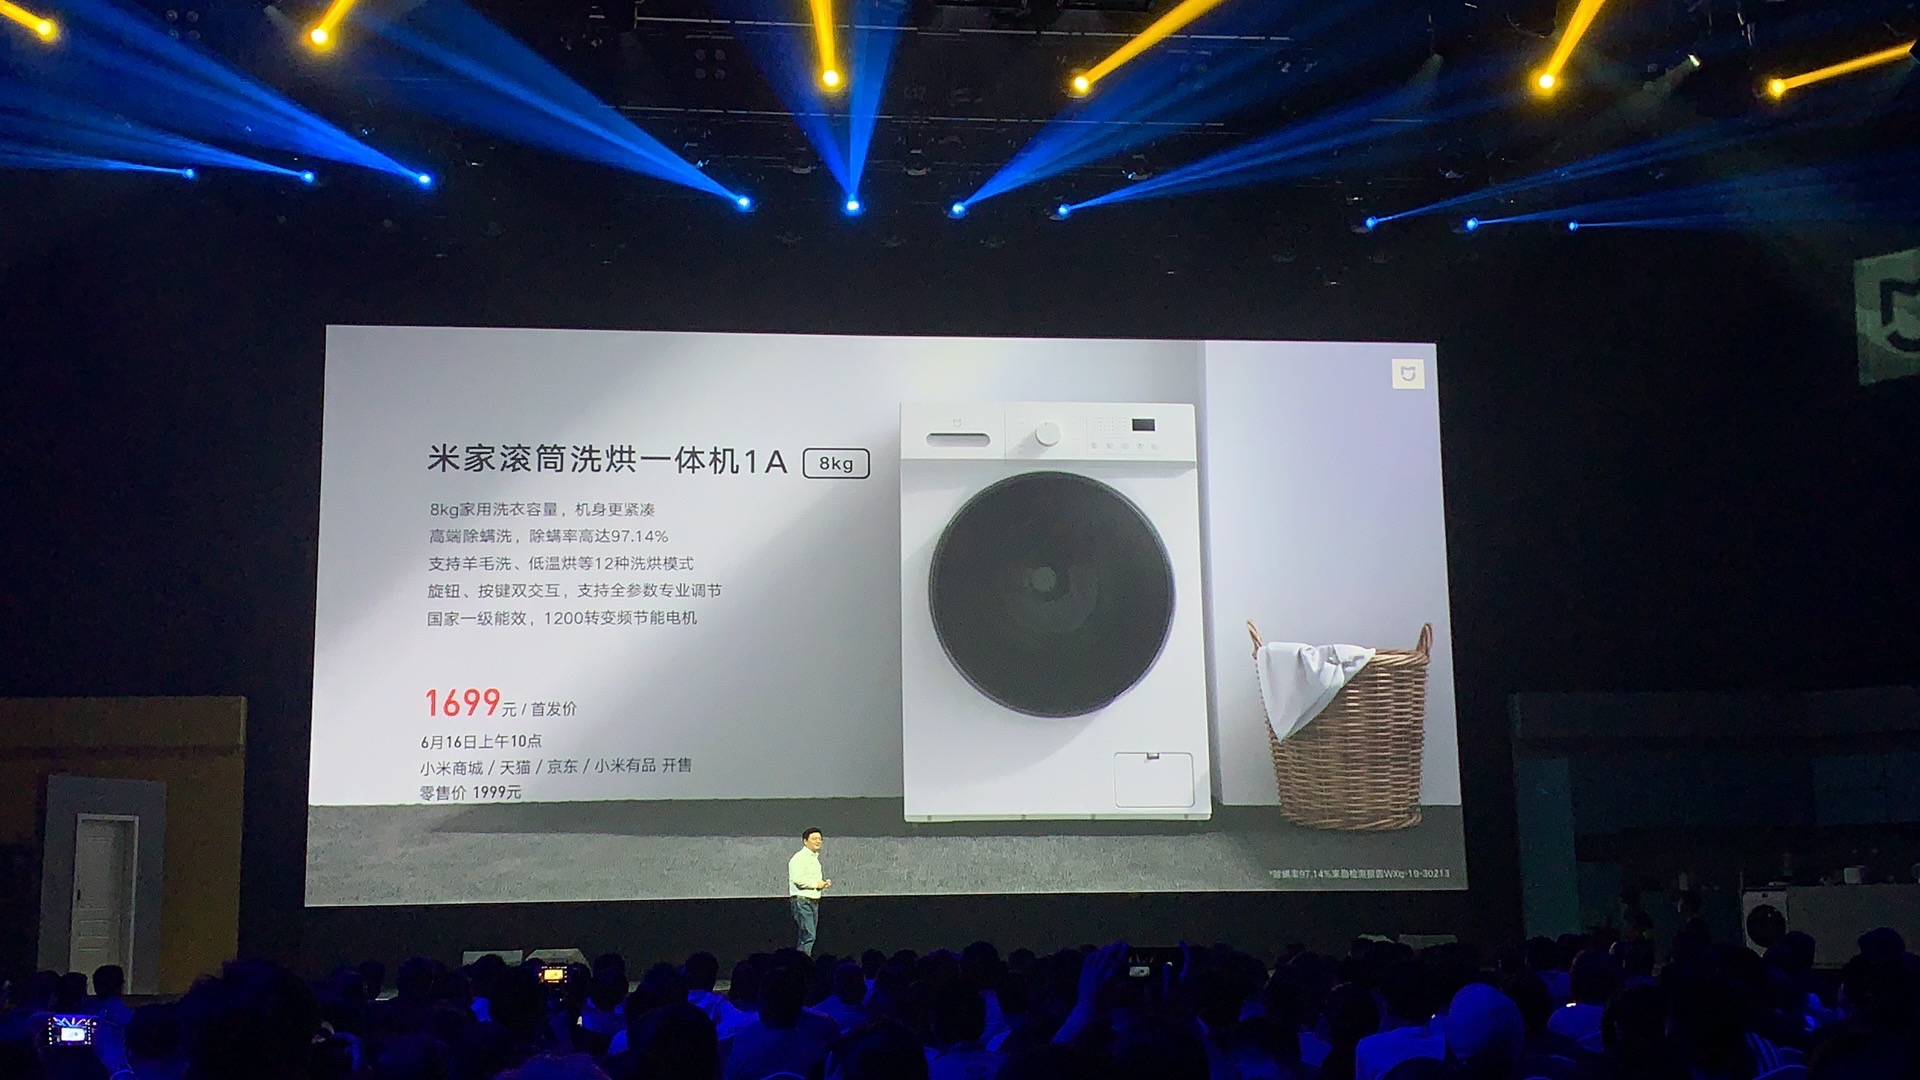 Xiaomi lança máquina de lavar roupa com acesso remoto